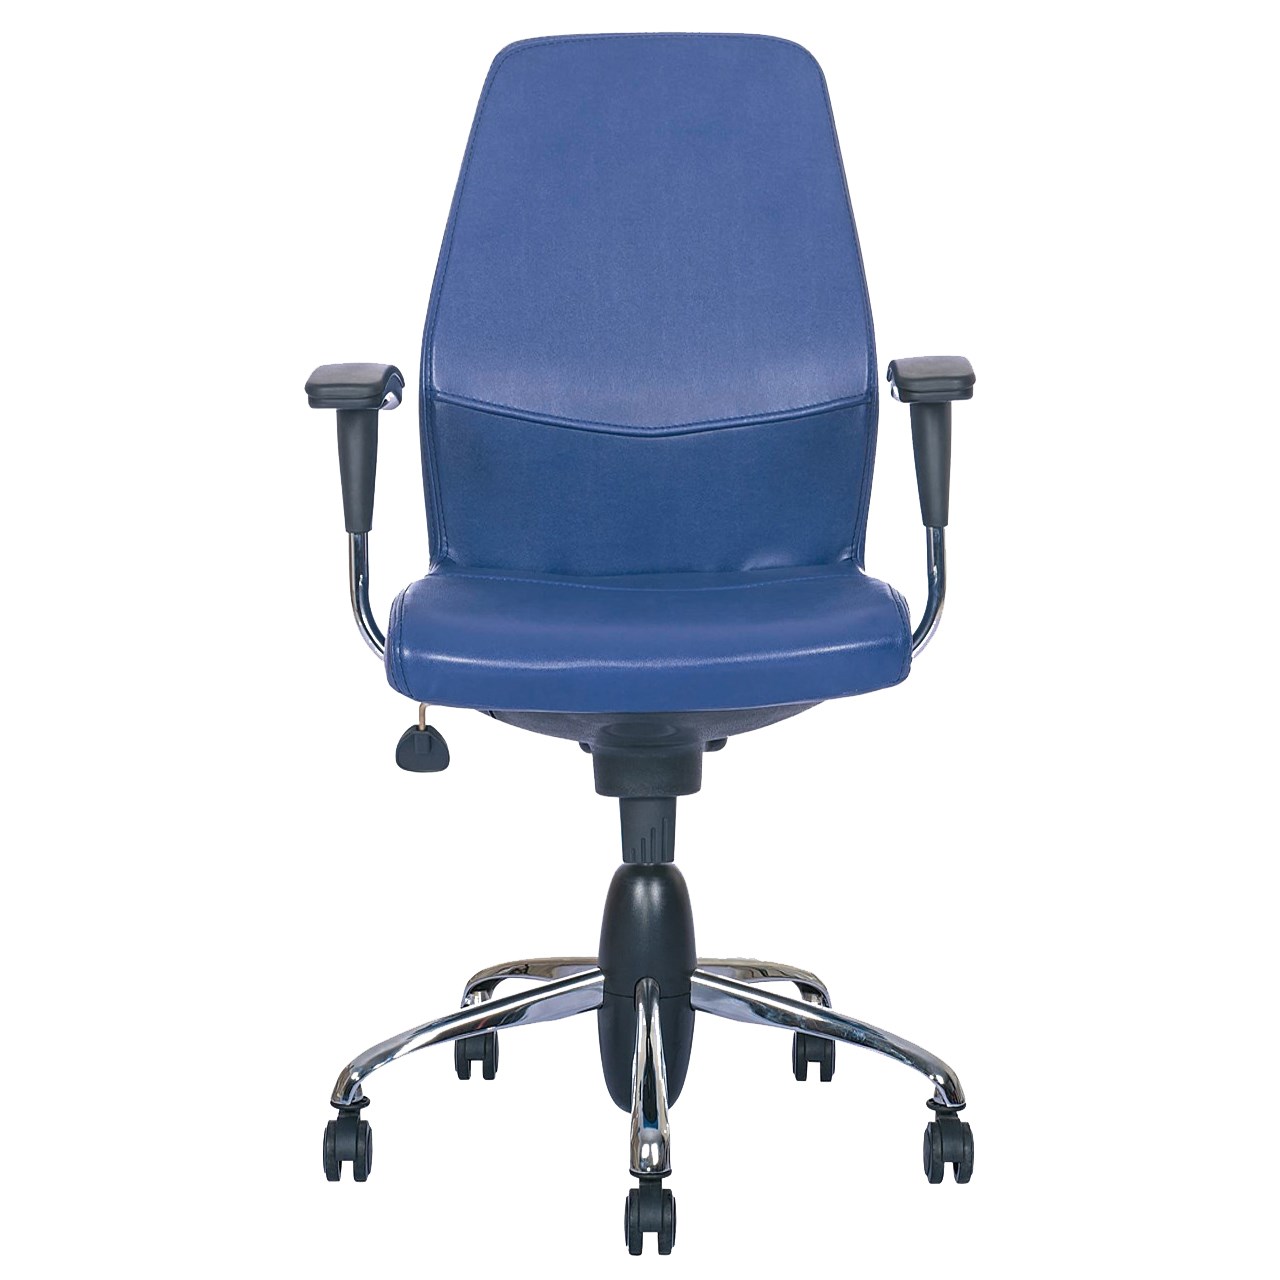 صندلی اداری نیلپر مدل SK708g چرمی